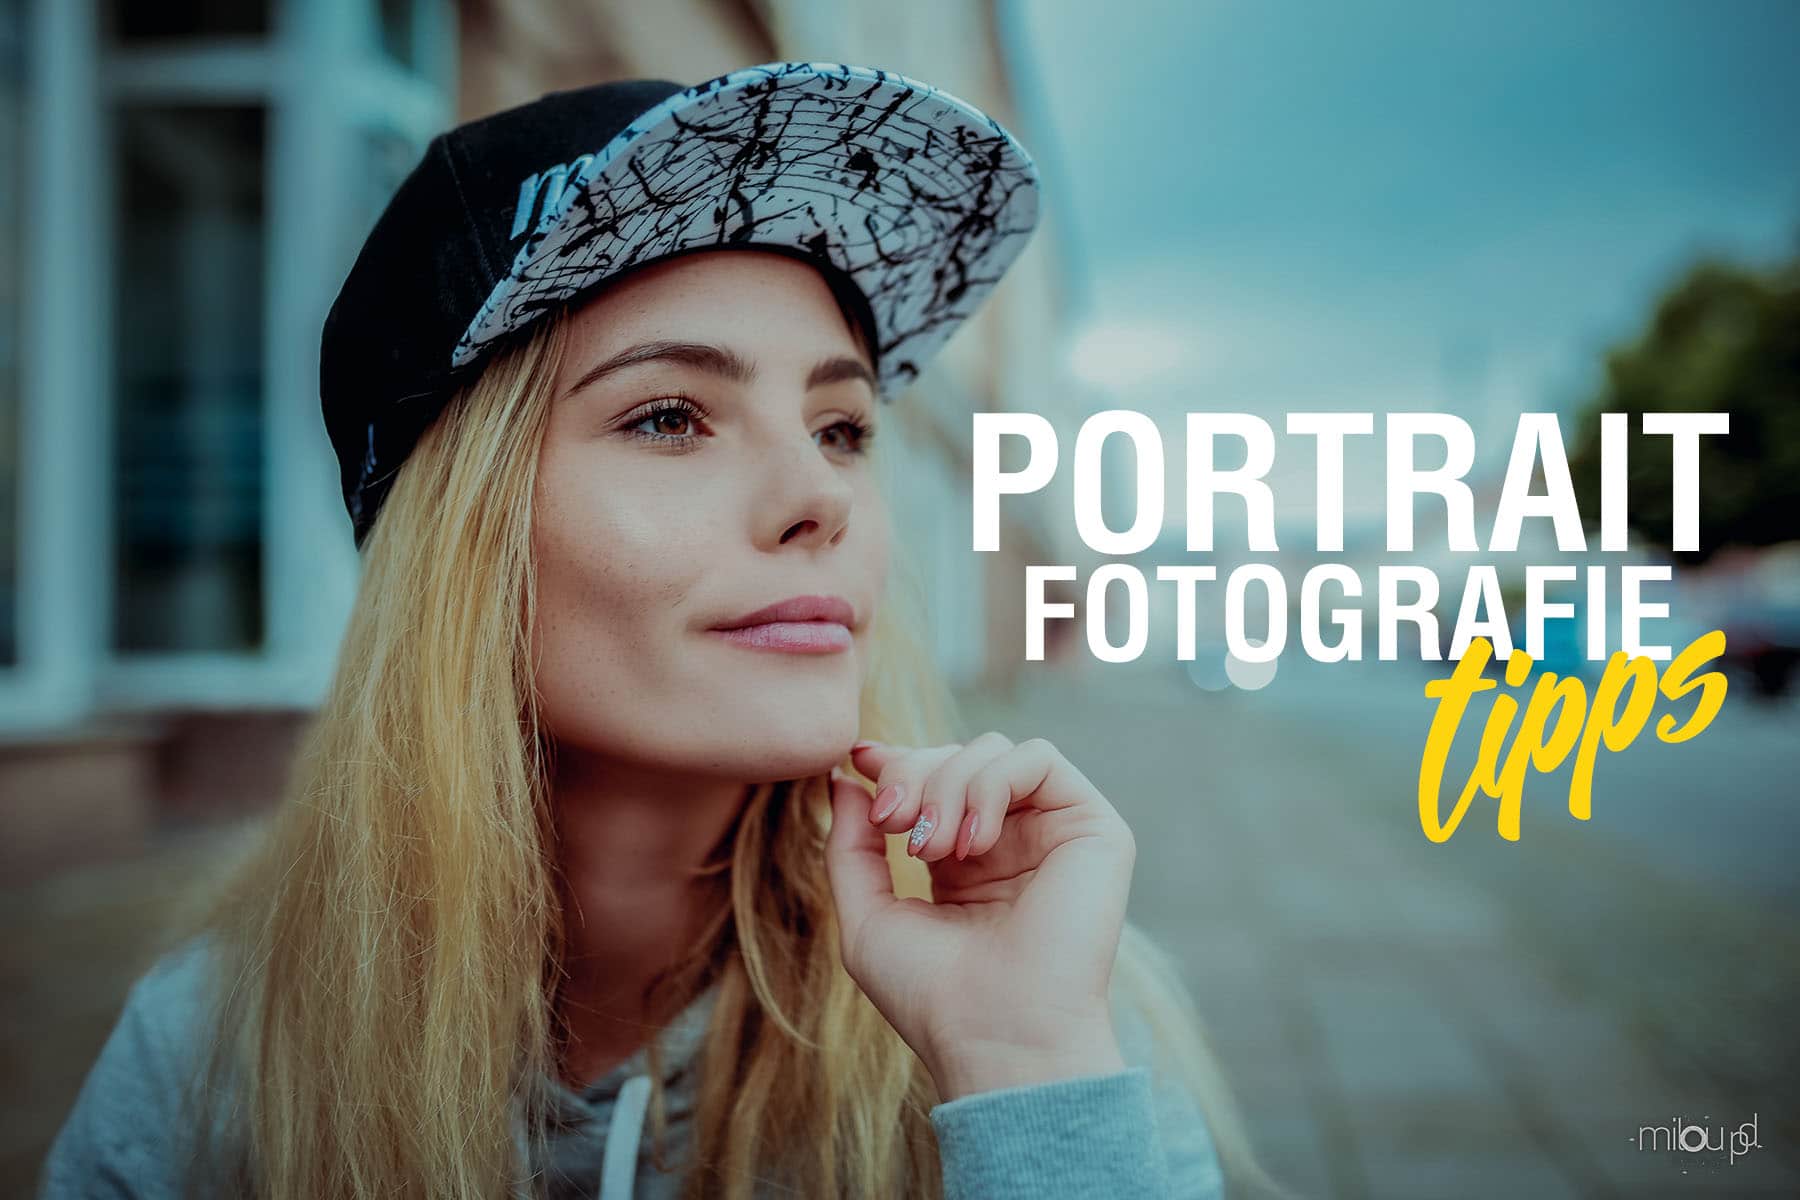 Portraitfotografie - Tipps für gute Portraitfotos​